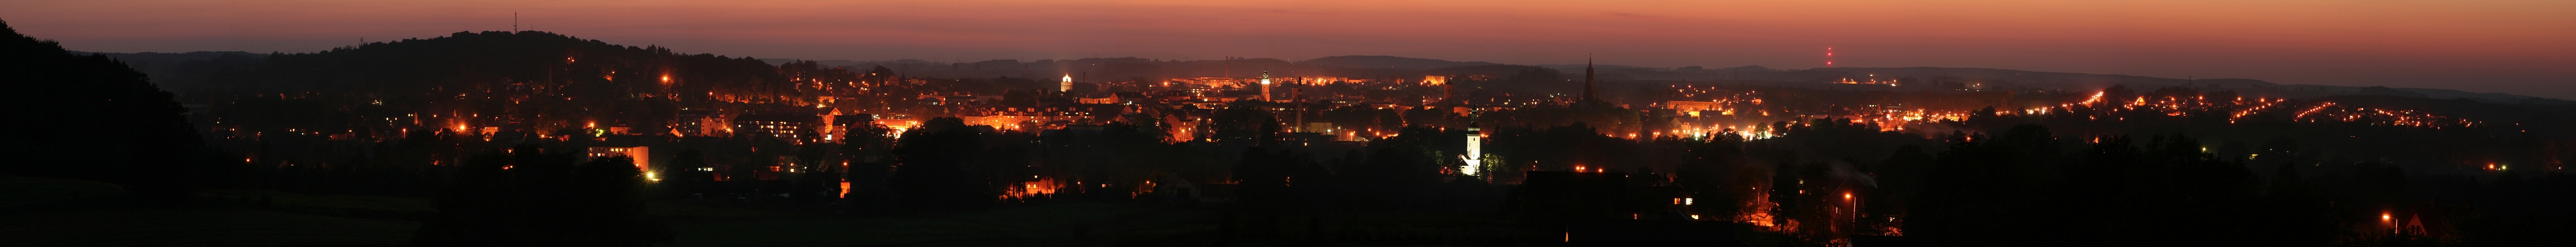 Evening panorama of Luban facing west